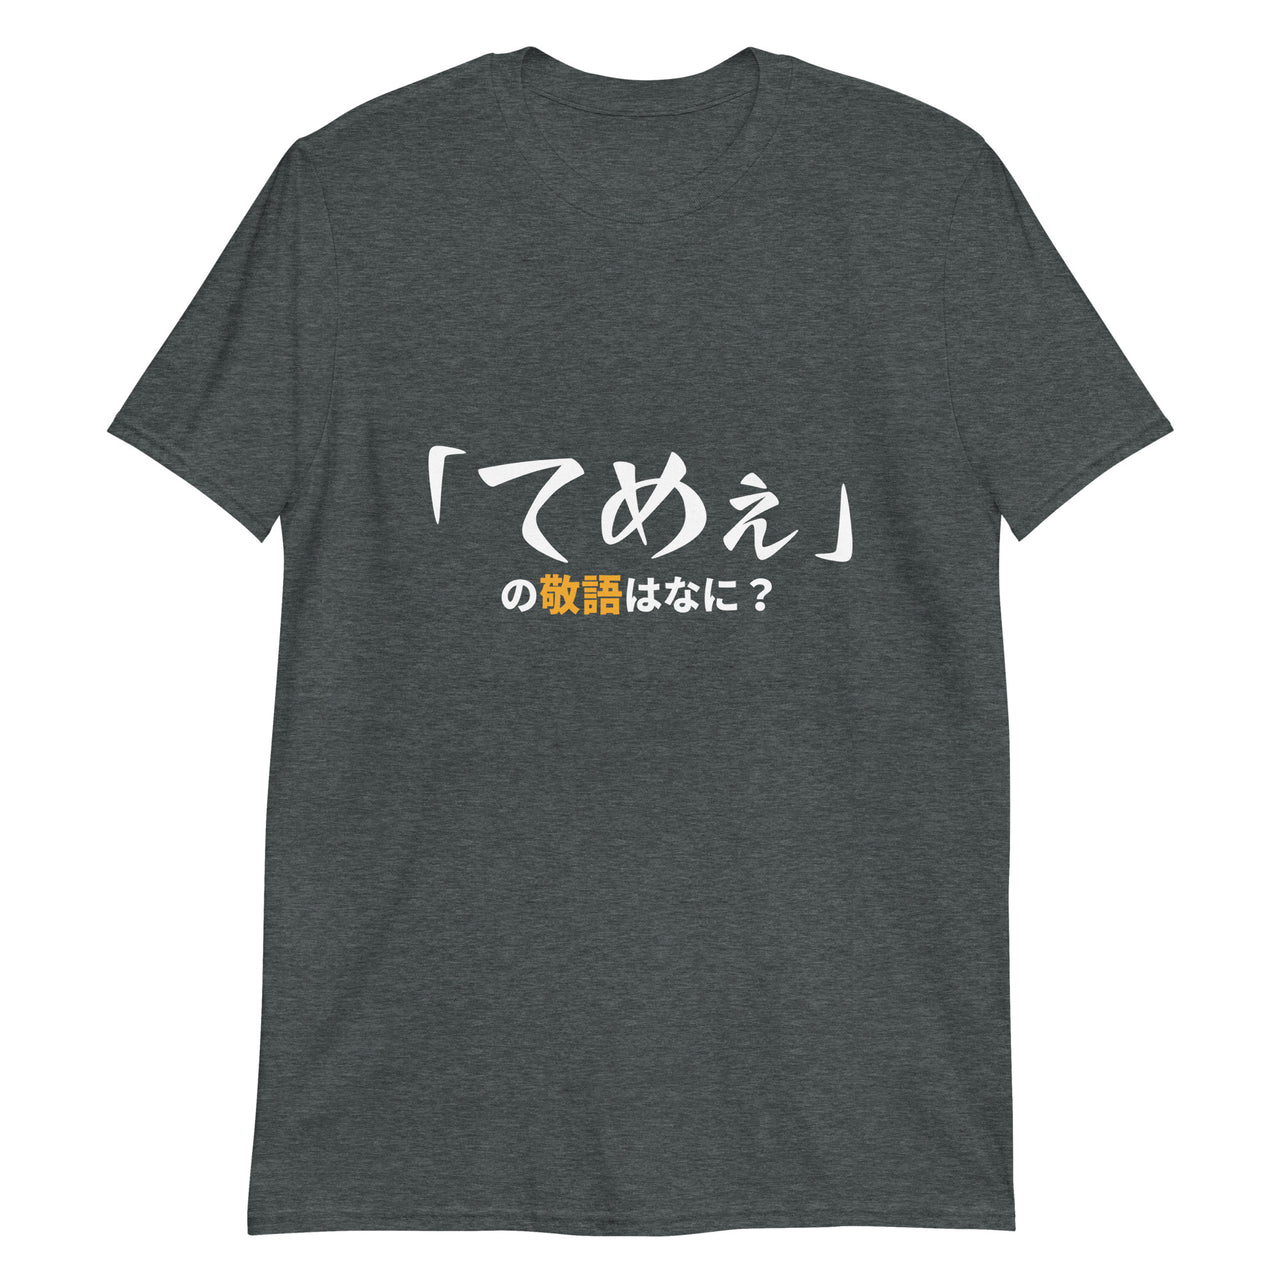 Politely Insult in Japanese Short-Sleeve Unisex T-Shirt